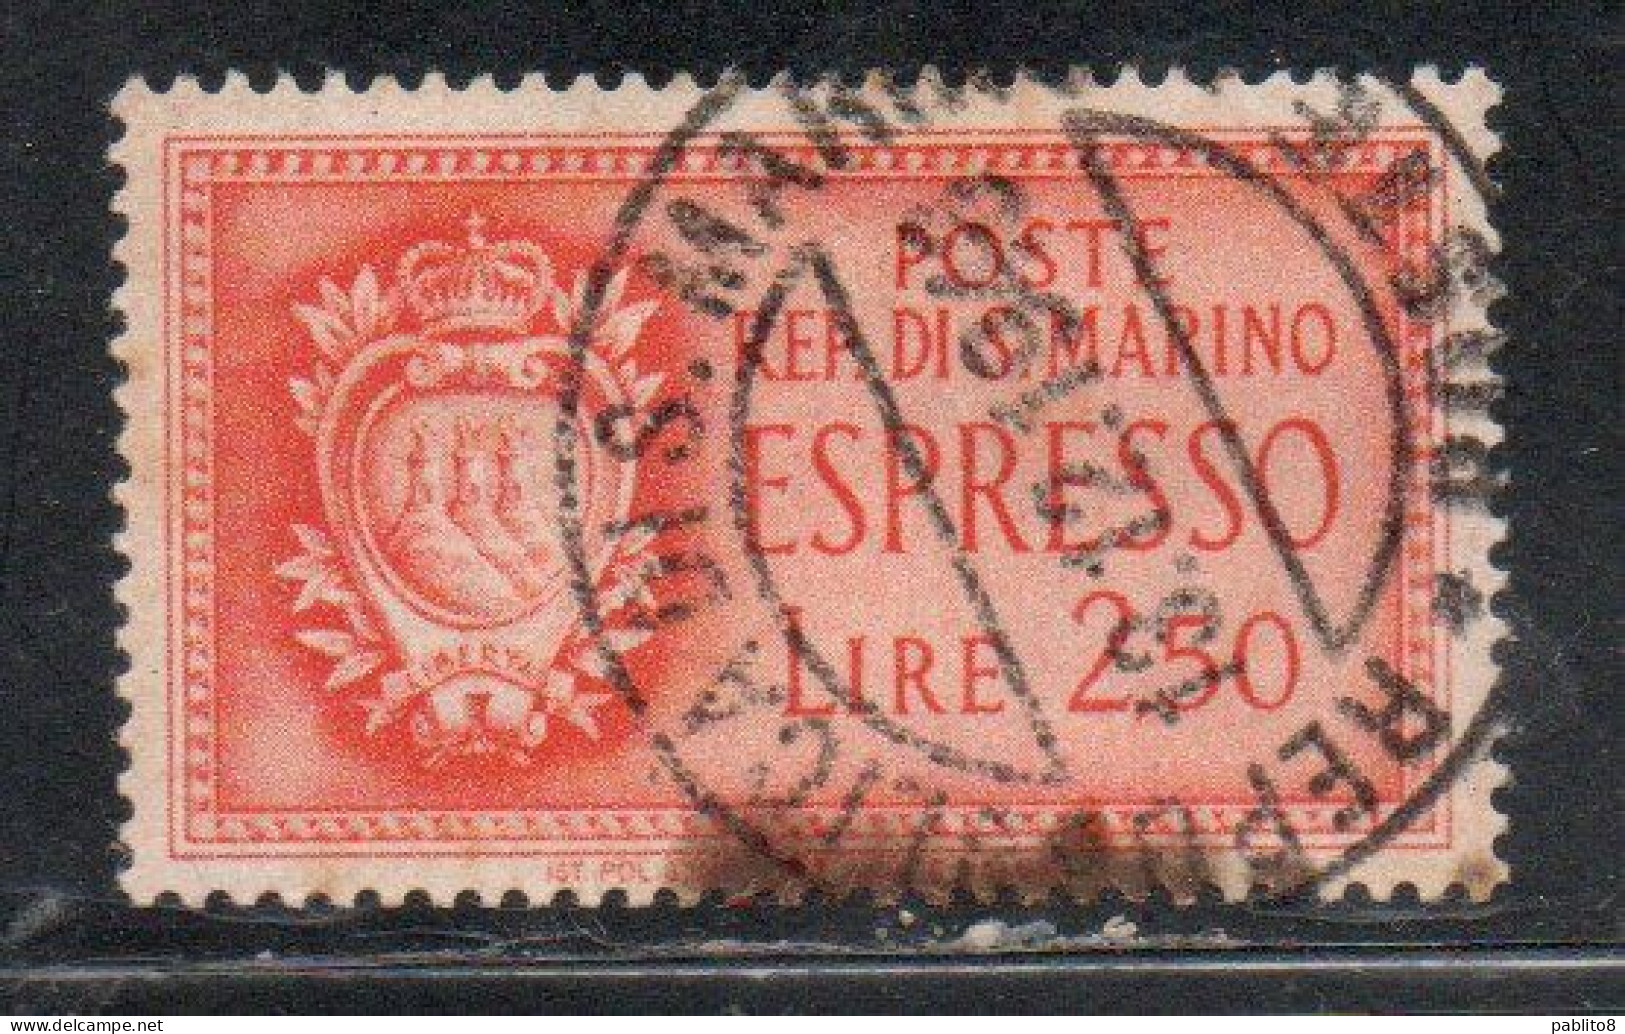 REPUBBLICA DI SAN MARINO 1943 ESPRESSI STEMMA SPECIAL DELIVERY COAT OF ARMS ESPRESSO LIRE 2,50  USATA USED OBLITERE' - Express Letter Stamps